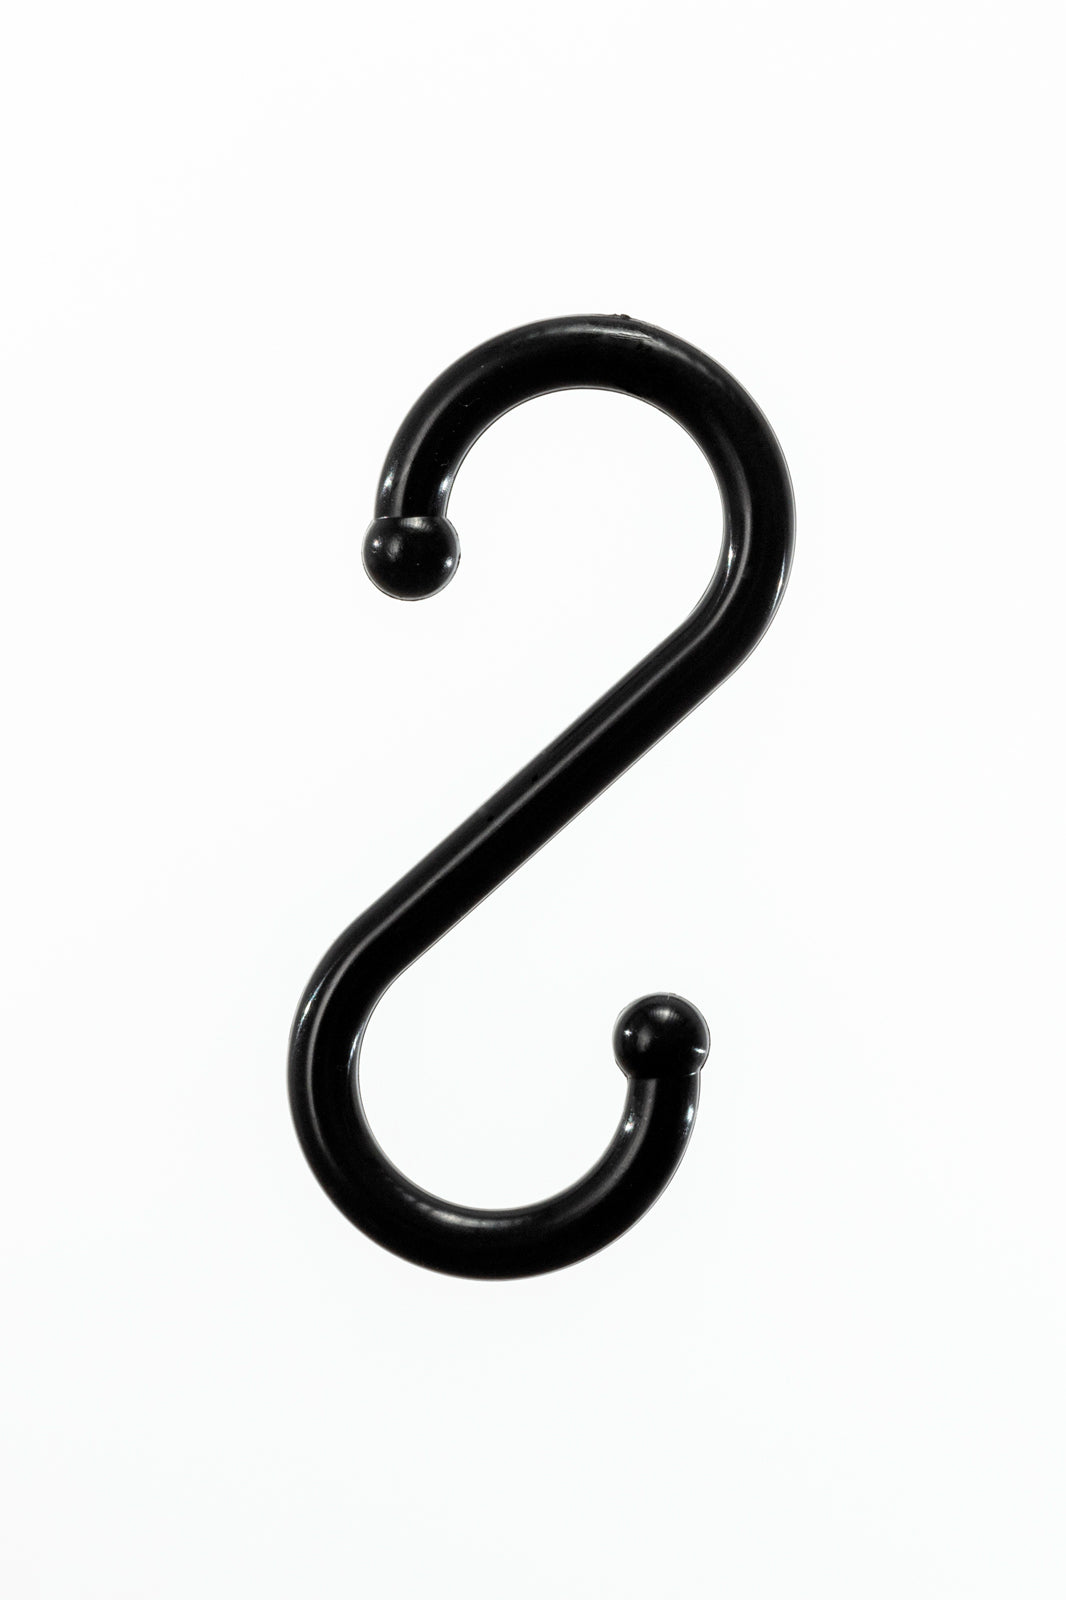 GoDry Hanger "S" hooks (sold by 4)